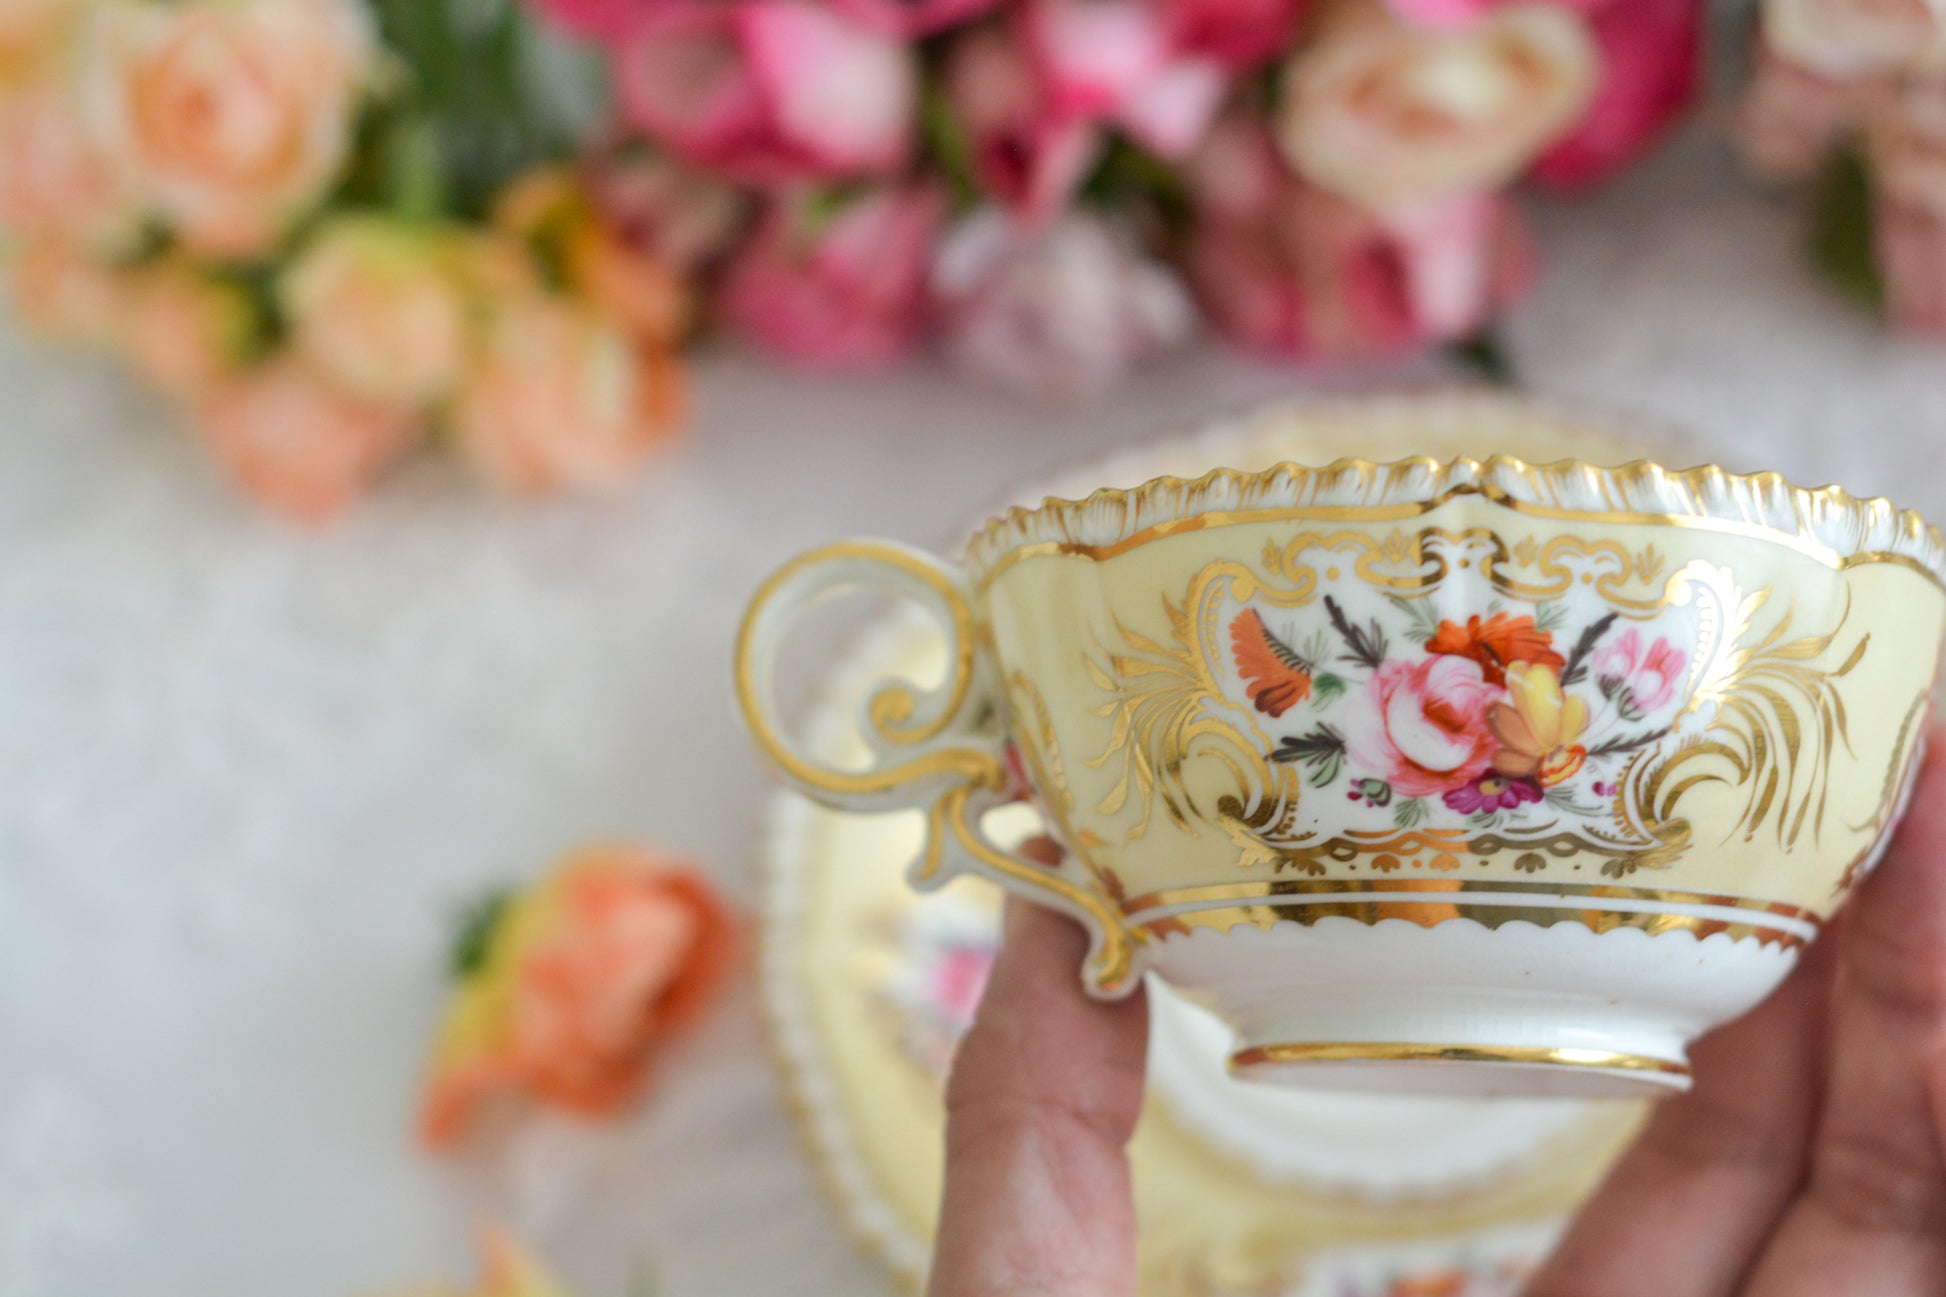 コールポートのペンブロークシェイプと呼ばれるシェイプのカップです。縁の飾り模様が特徴的で1820年代後半に作られたとても古い作品です。豪華な縁飾りに手描きで描かれた美しい花々、エレガントなリングハンドル。約200年前に作られ、この持ち主の貴族はこんな美しいカップでどんな優雅なティータイムを過ごしていたのでしょうか。